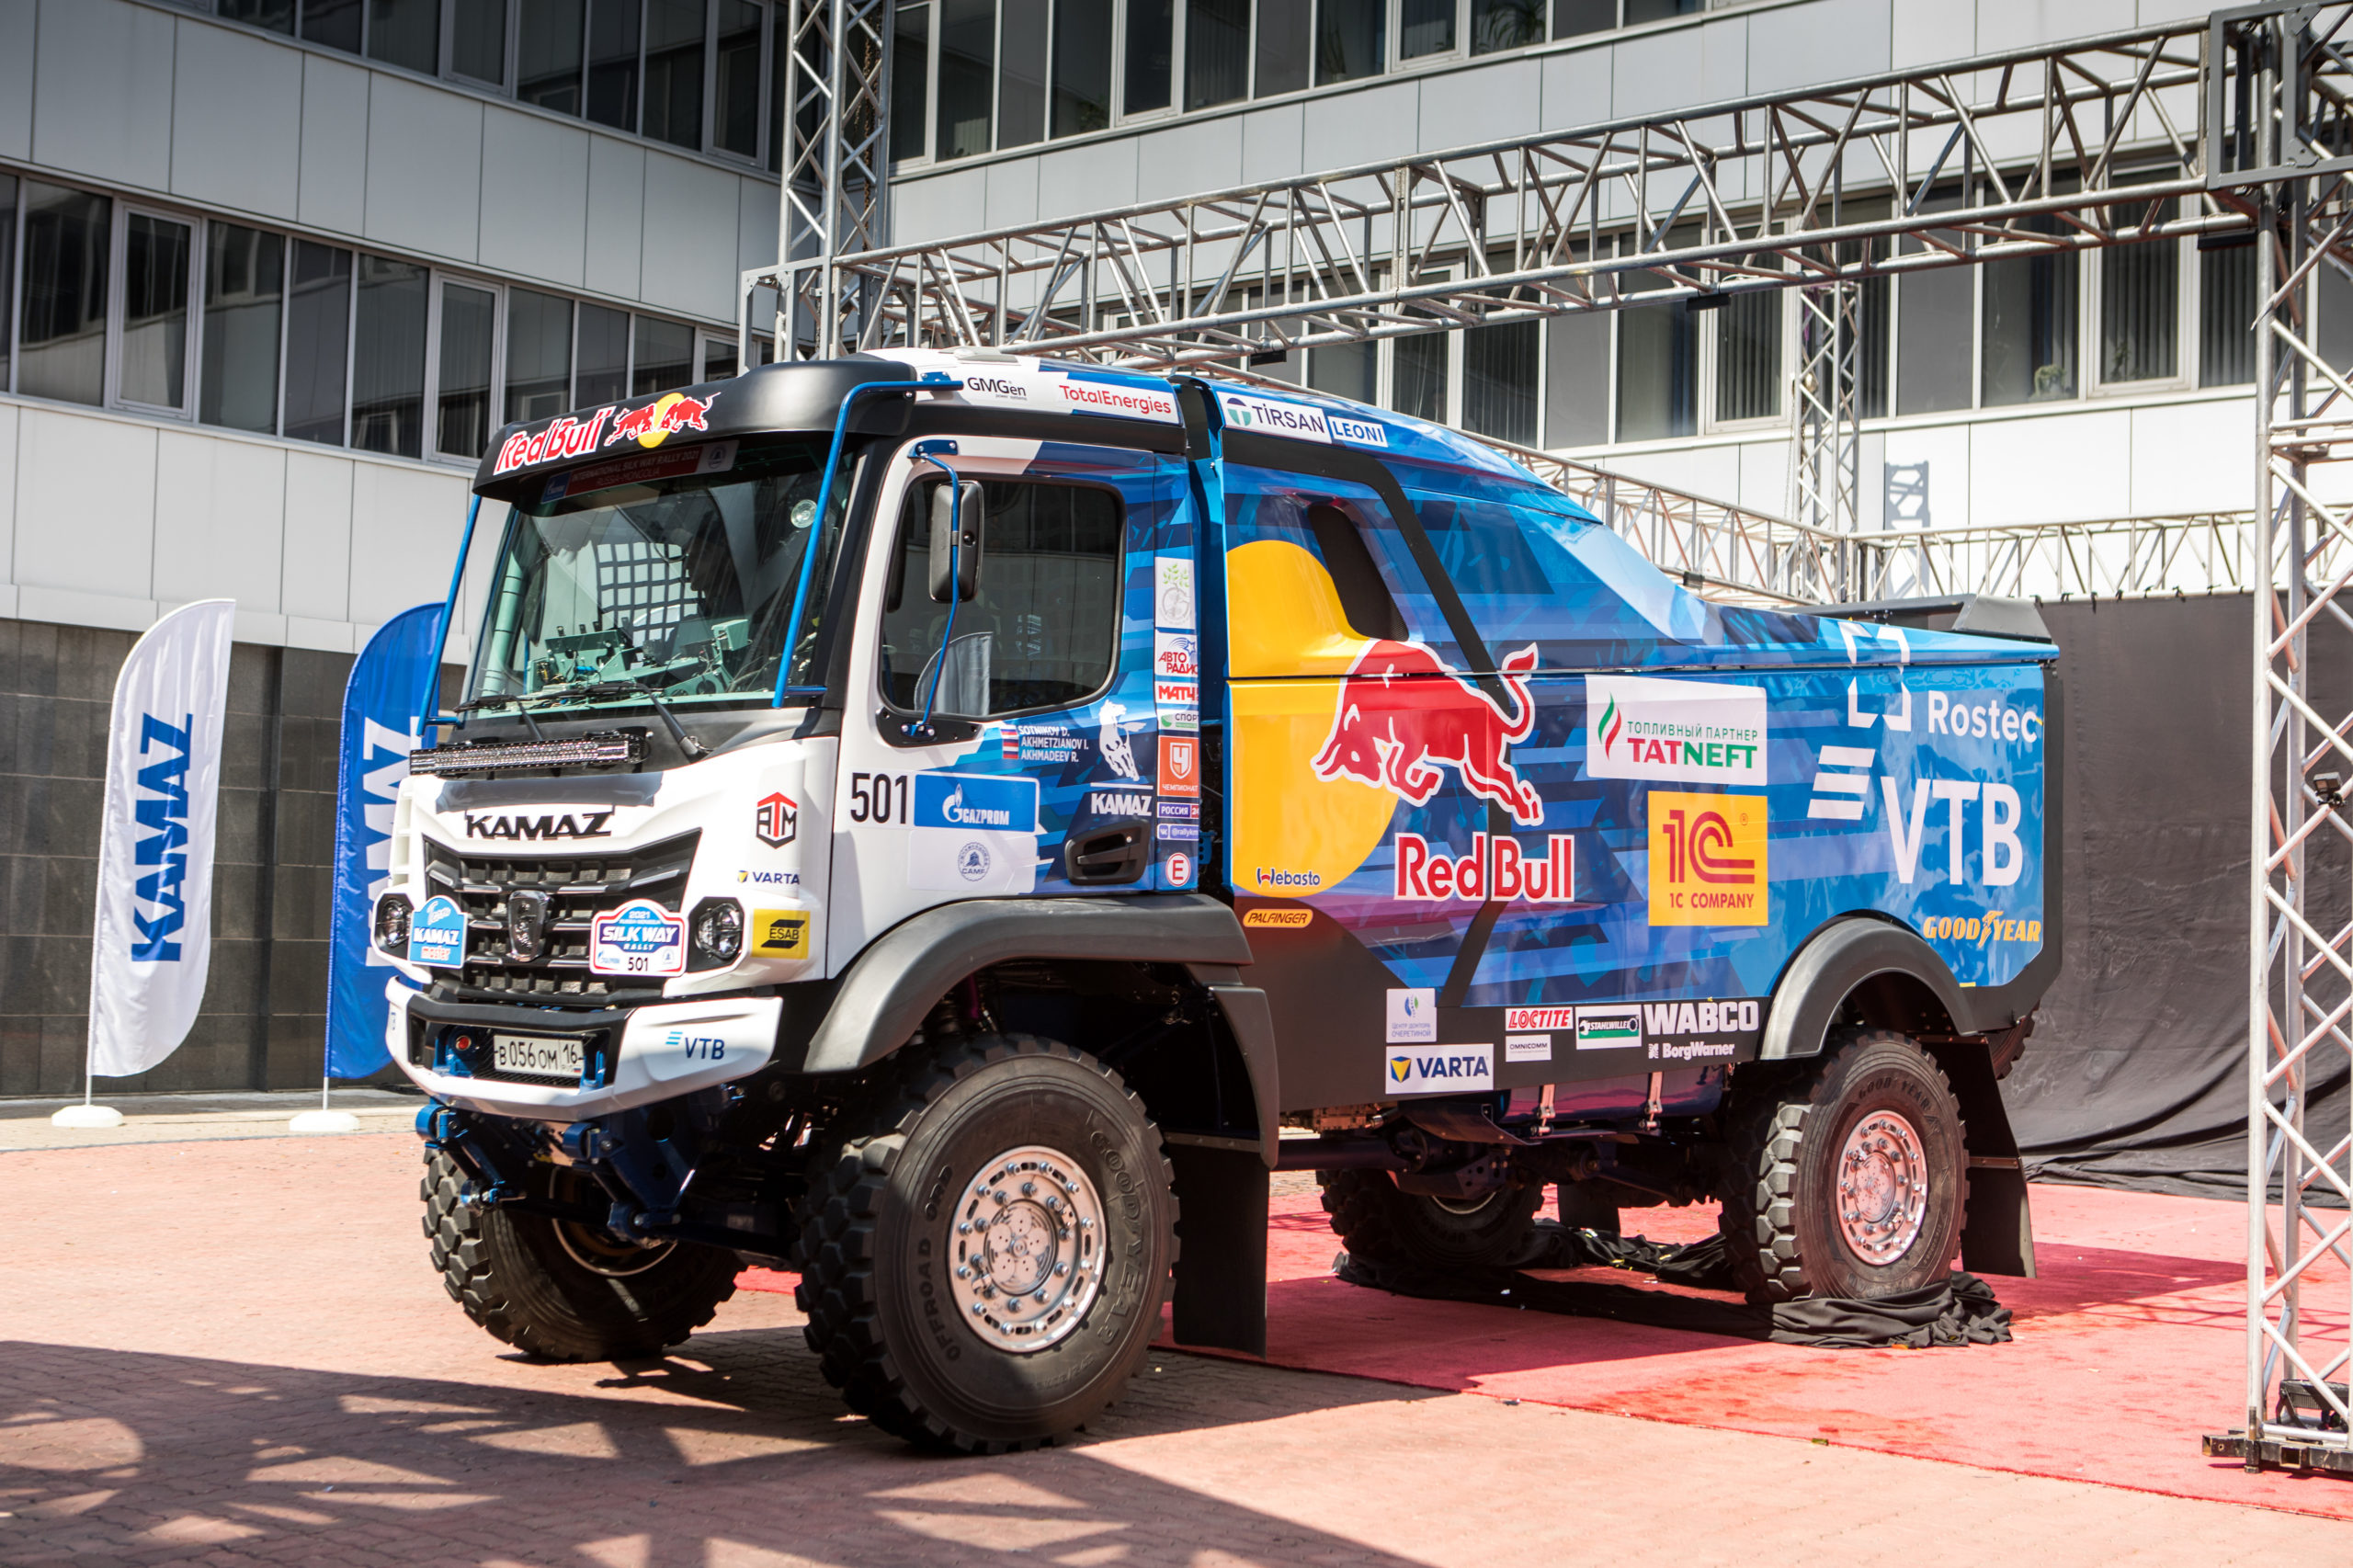 КАМАЗ-Мастер представил новый спортивный грузовик К5 для ралли «Шелковый Путь-2021»